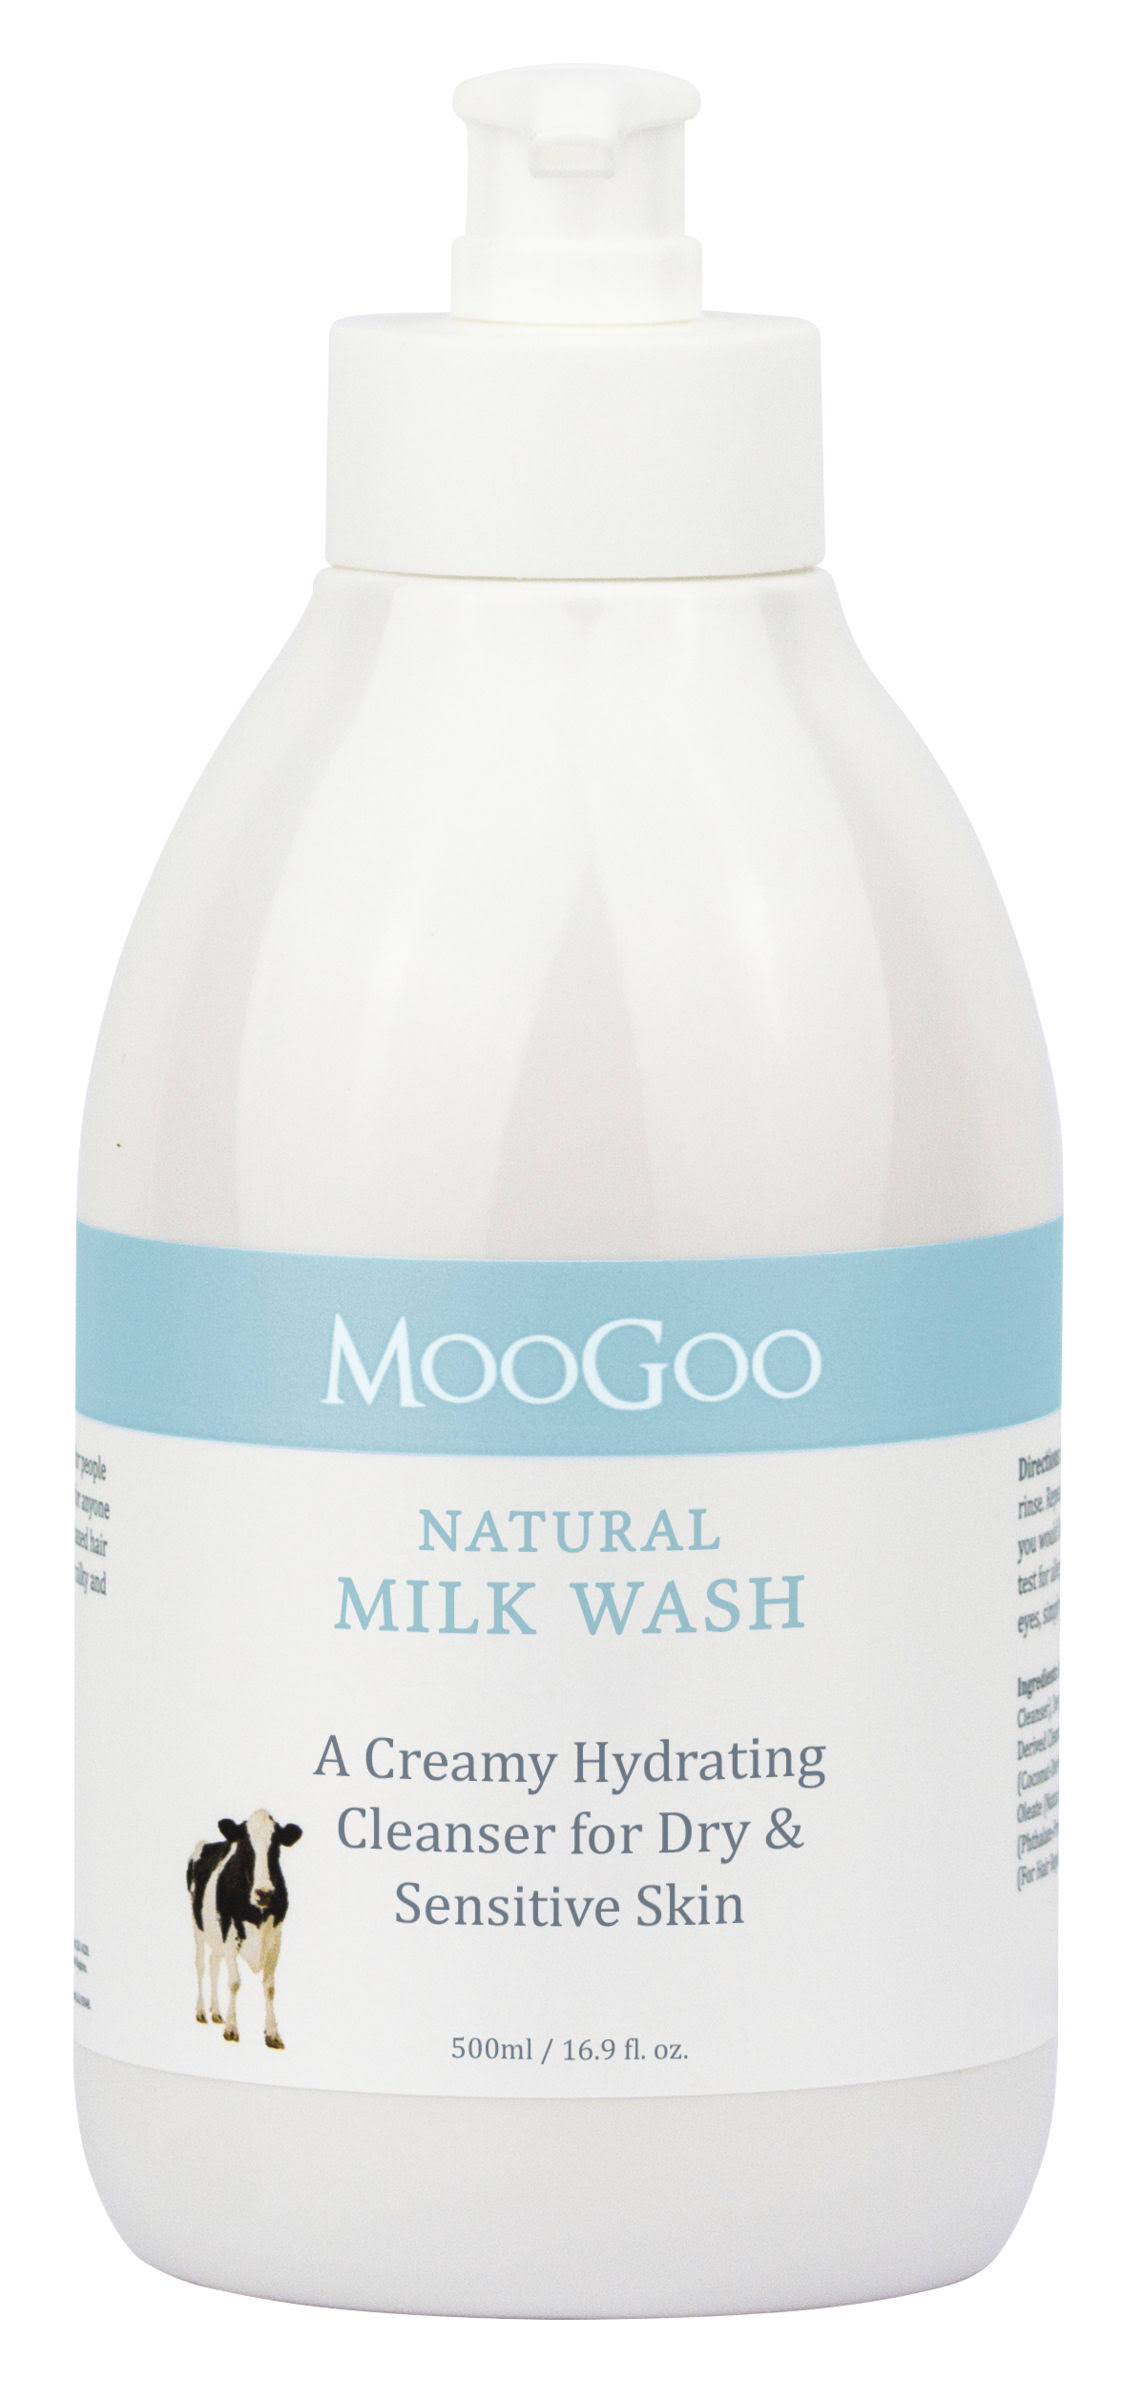 Moogoo Milk Wash